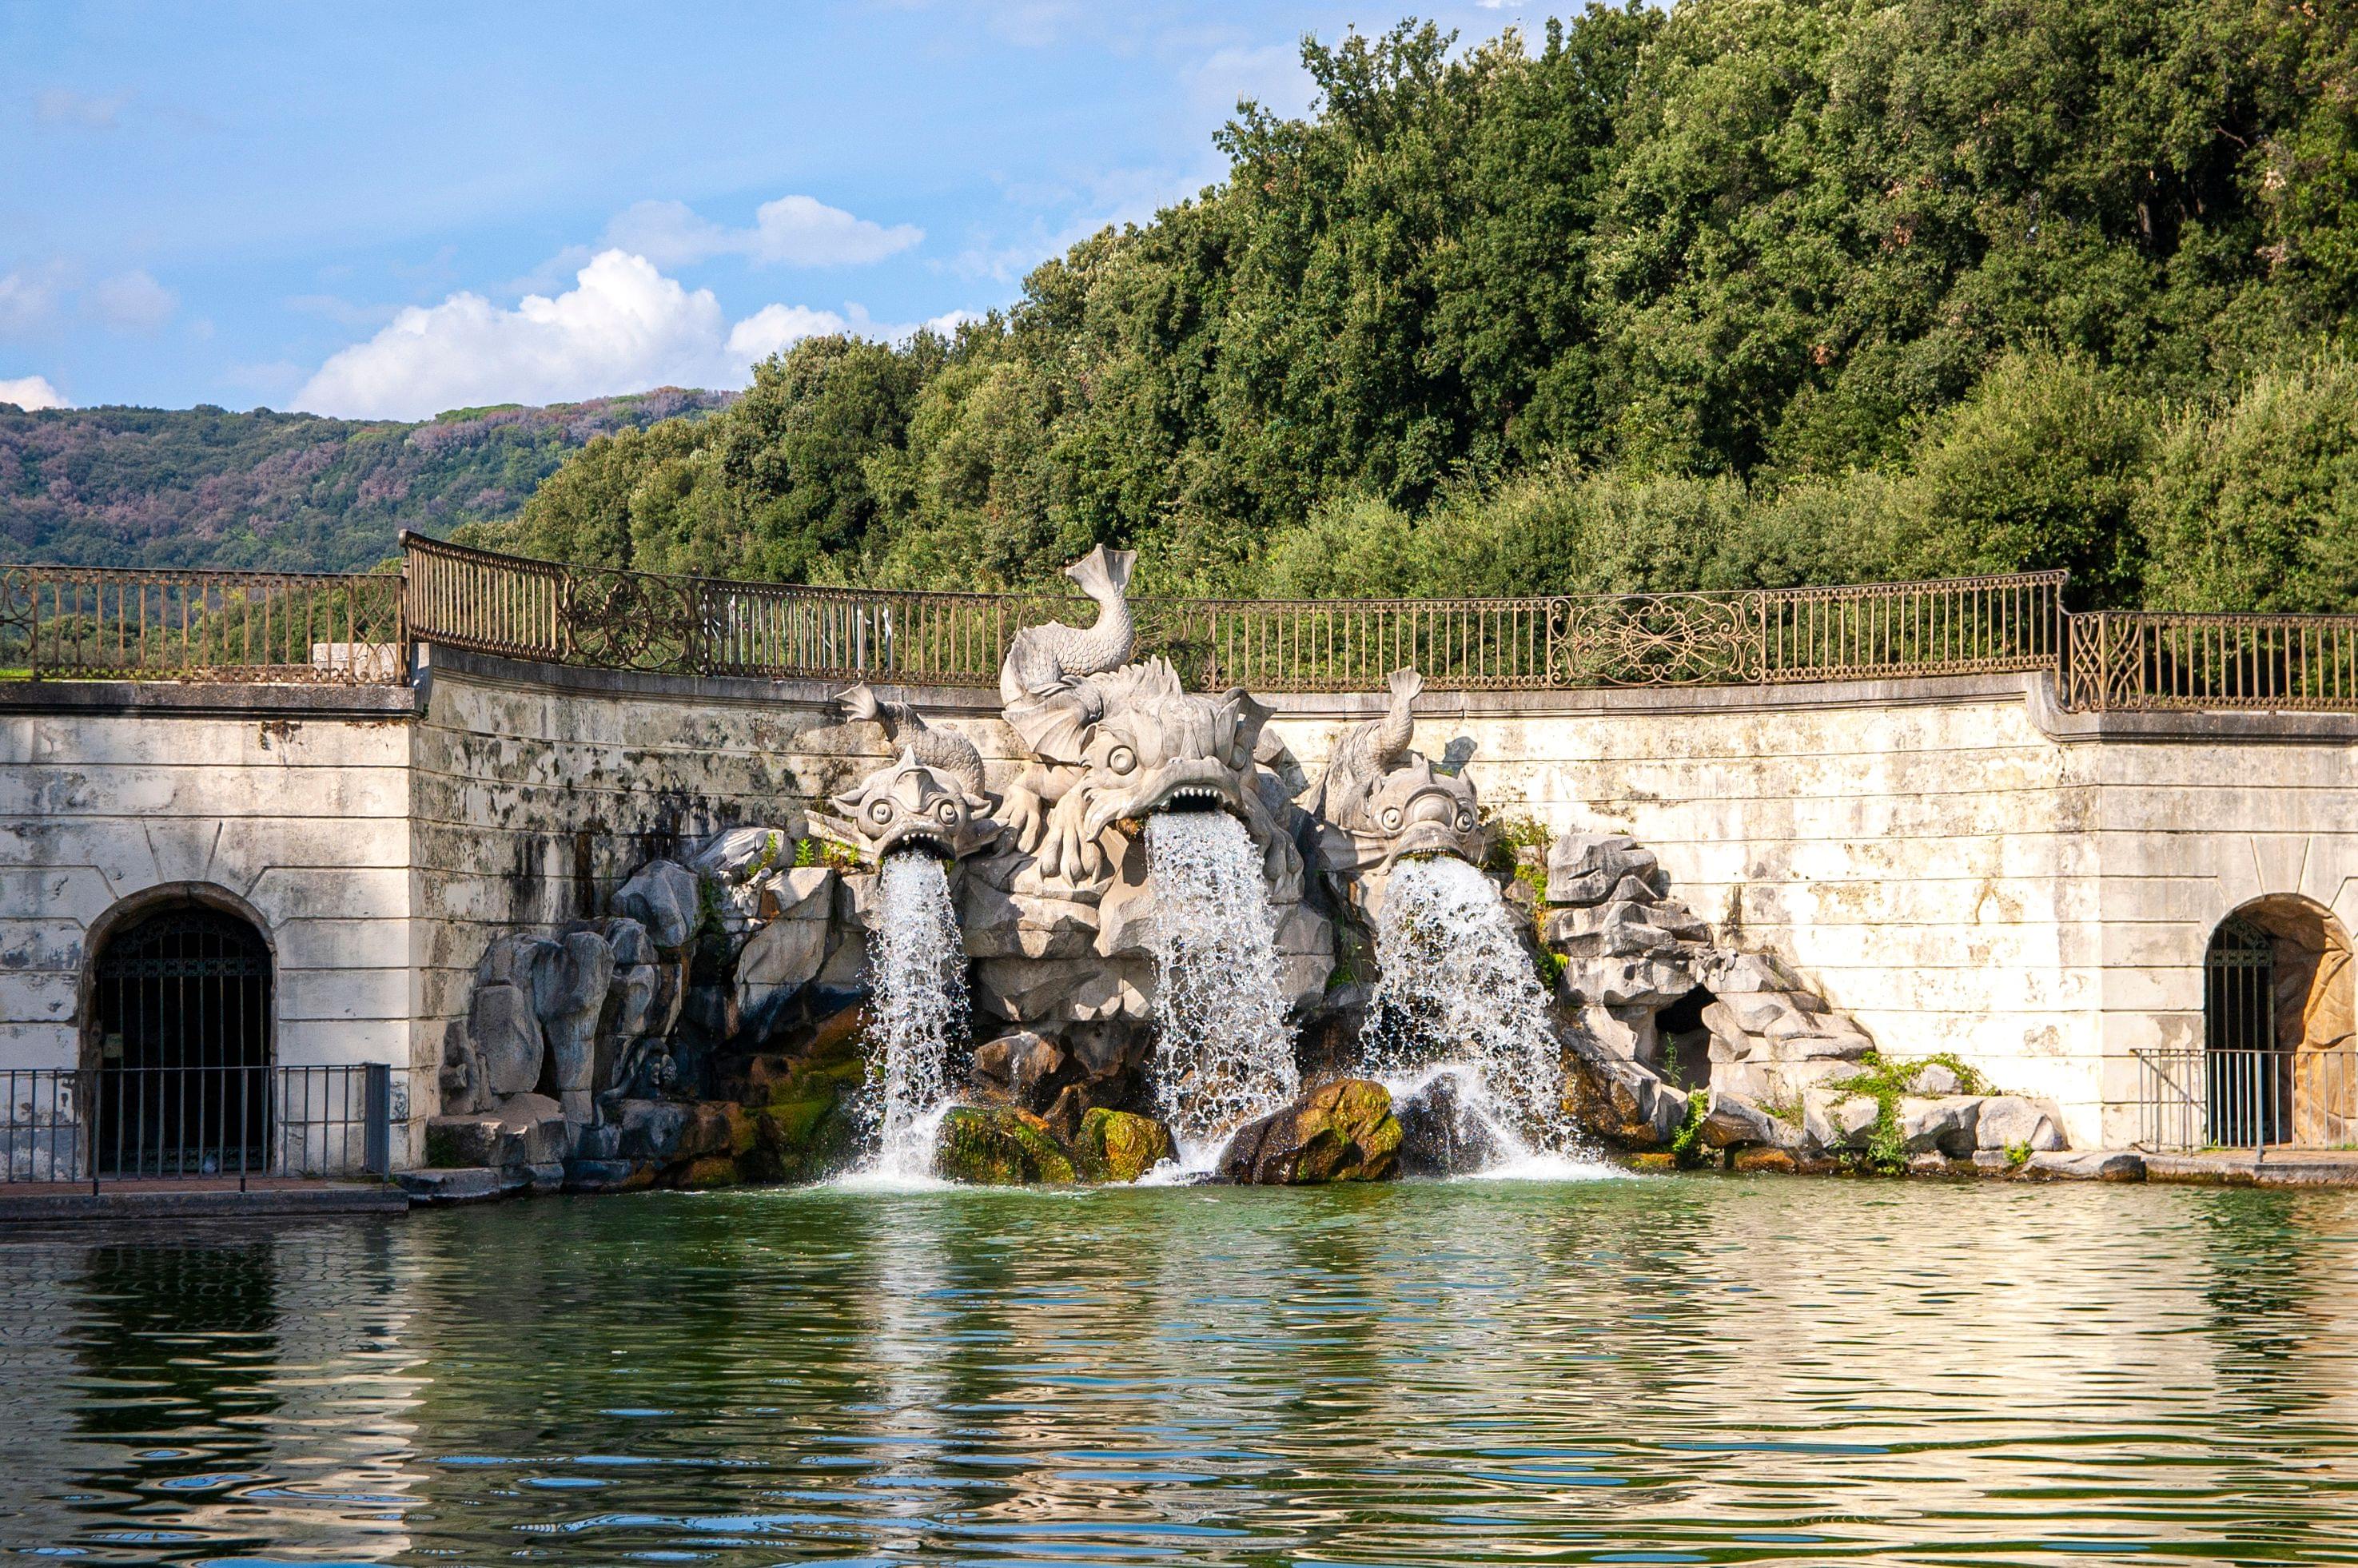 The Fountains of Reggia di Caserta